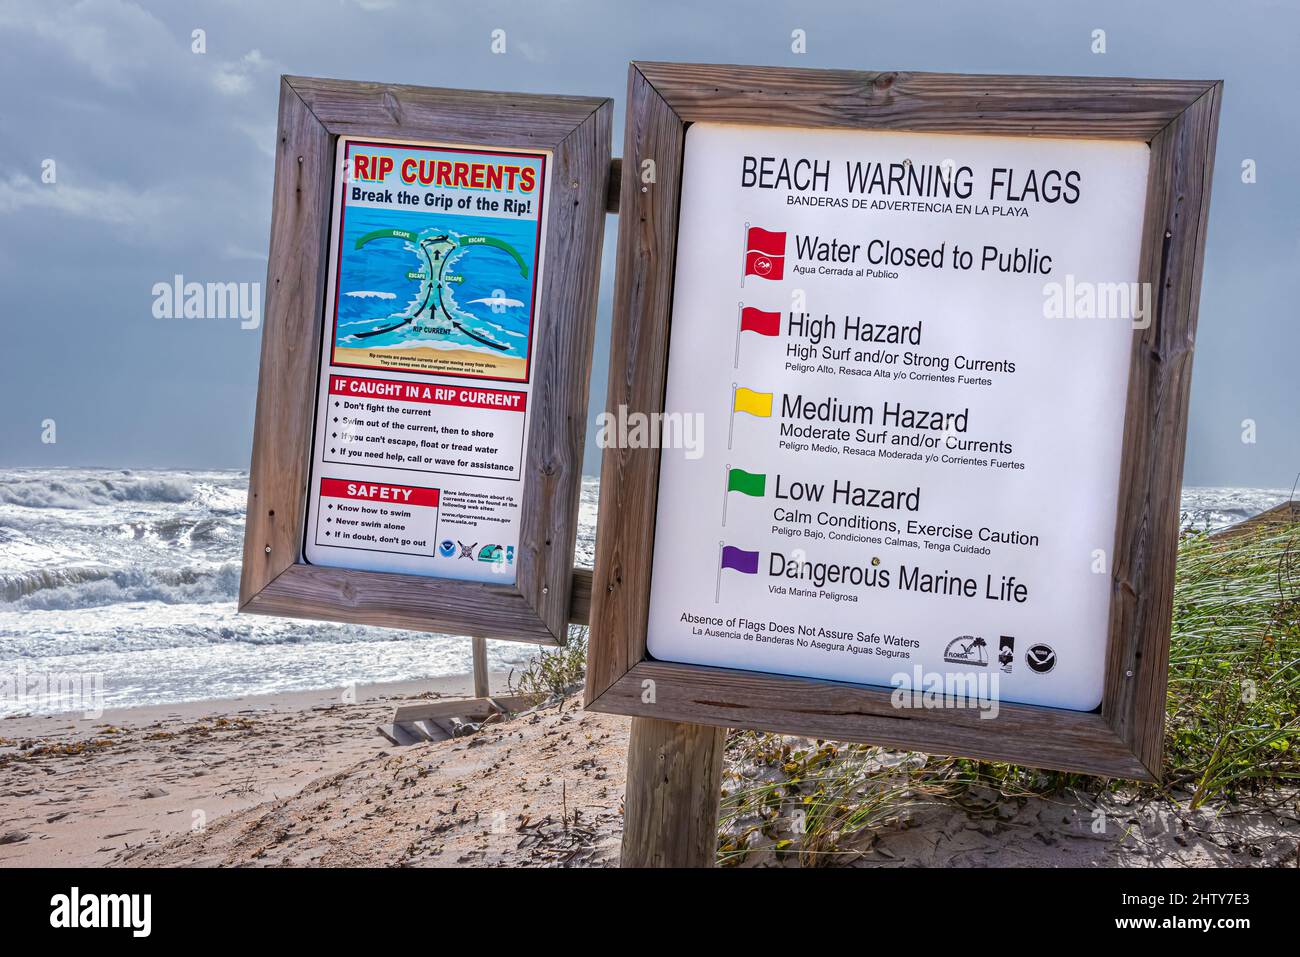 Warnschilder am Strand im Vilano Beach Oceanfront Park in der Nähe von St. Augustine, Florida, während eines Nor'oster-Sturms, der starken Wind und raues Meer brachte. Stockfoto